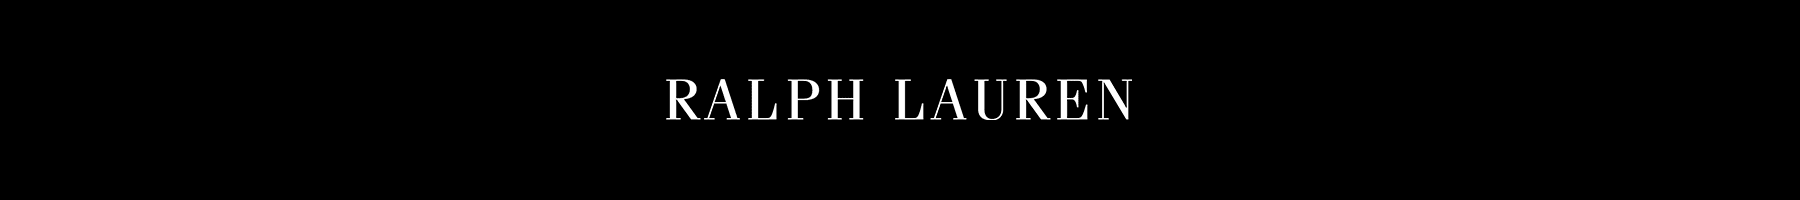 Ralph Lauren White Logo - Ralph Lauren Collection at Bergdorf Goodman